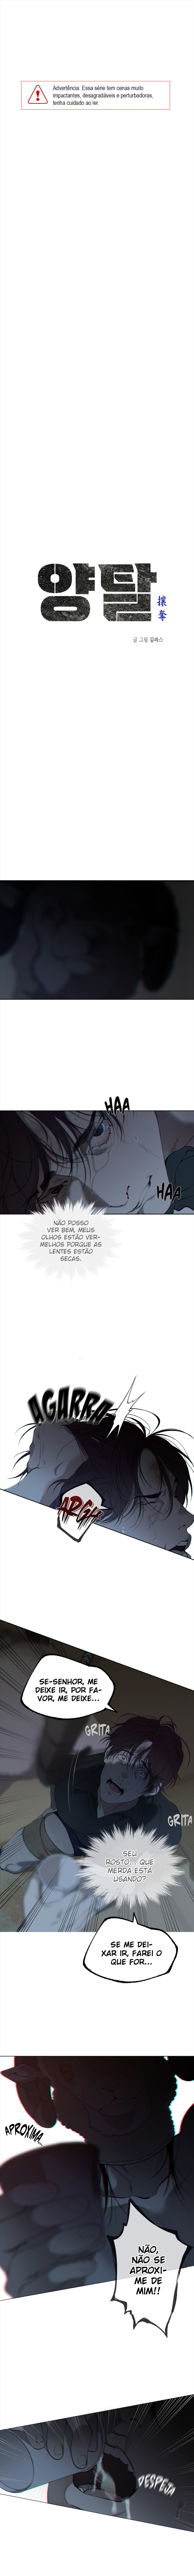 Ler Second Life Ranker Manga Capítulo 1 em Português Grátis Online